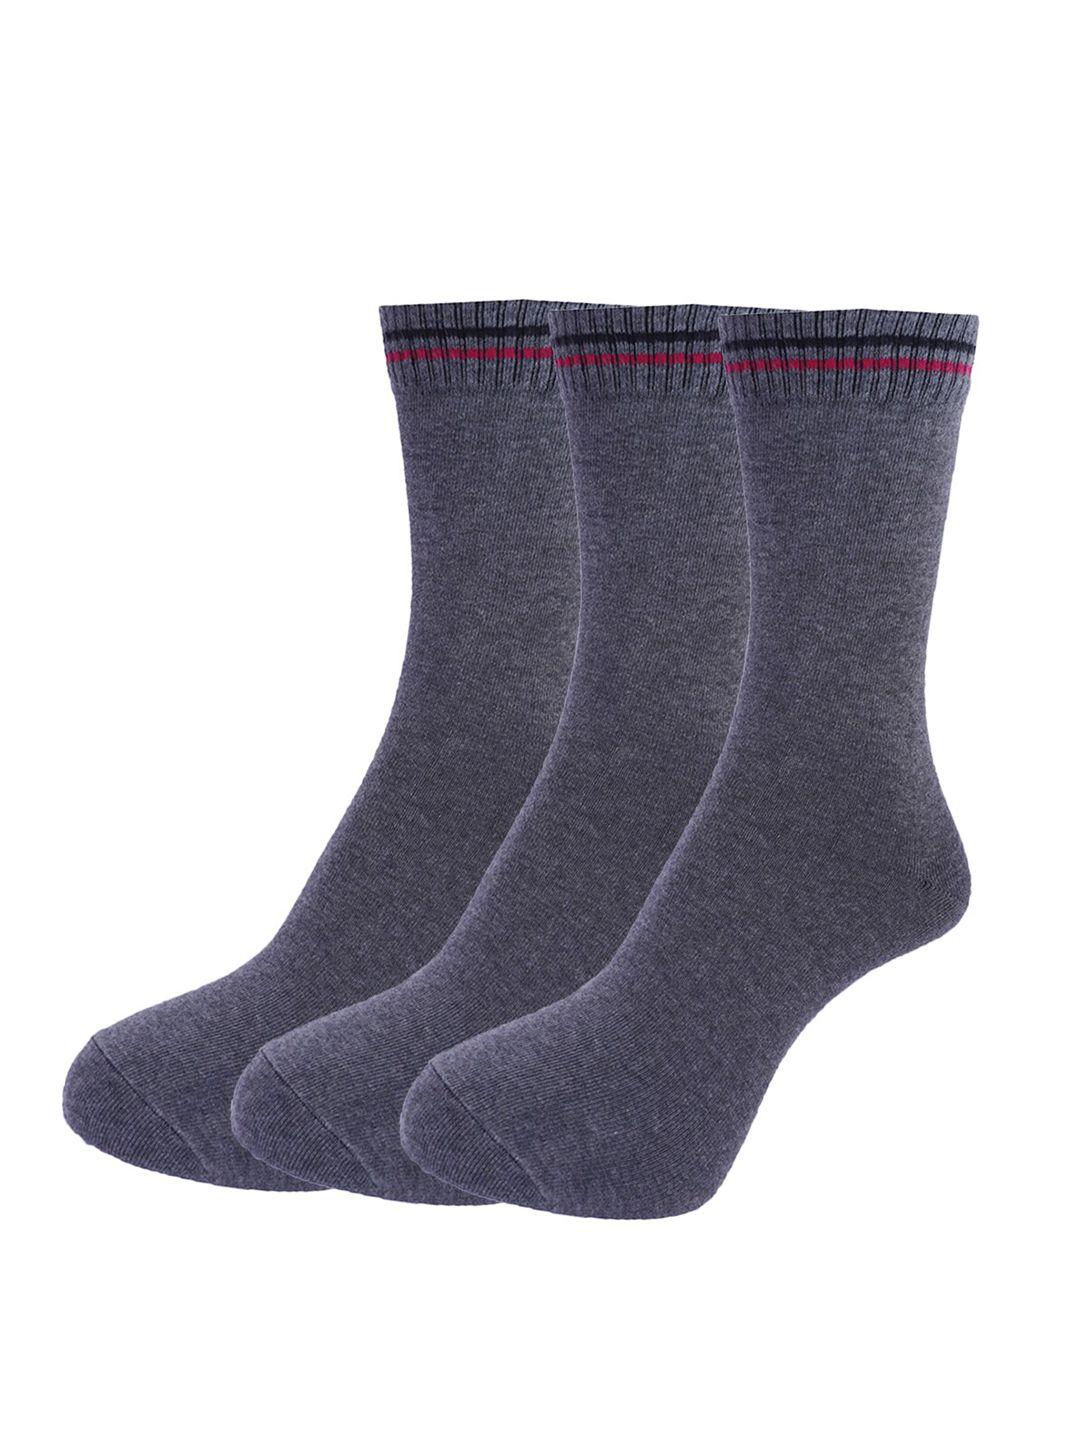 dollar-socks-men-pack-of-3-assorted-cotton-full-length-socks